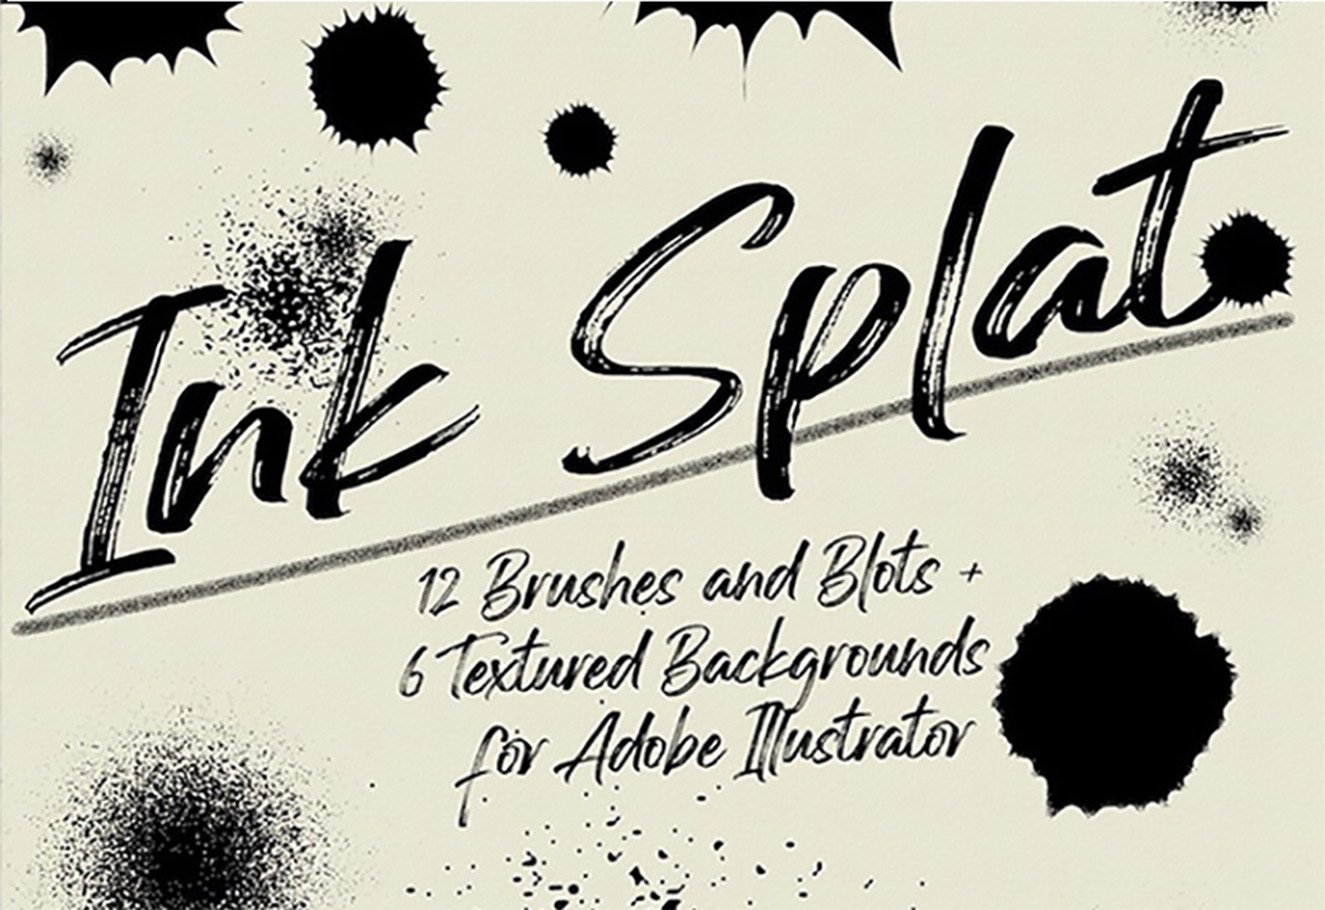 Ink Splat Brush Pack for Illustratorcover image.